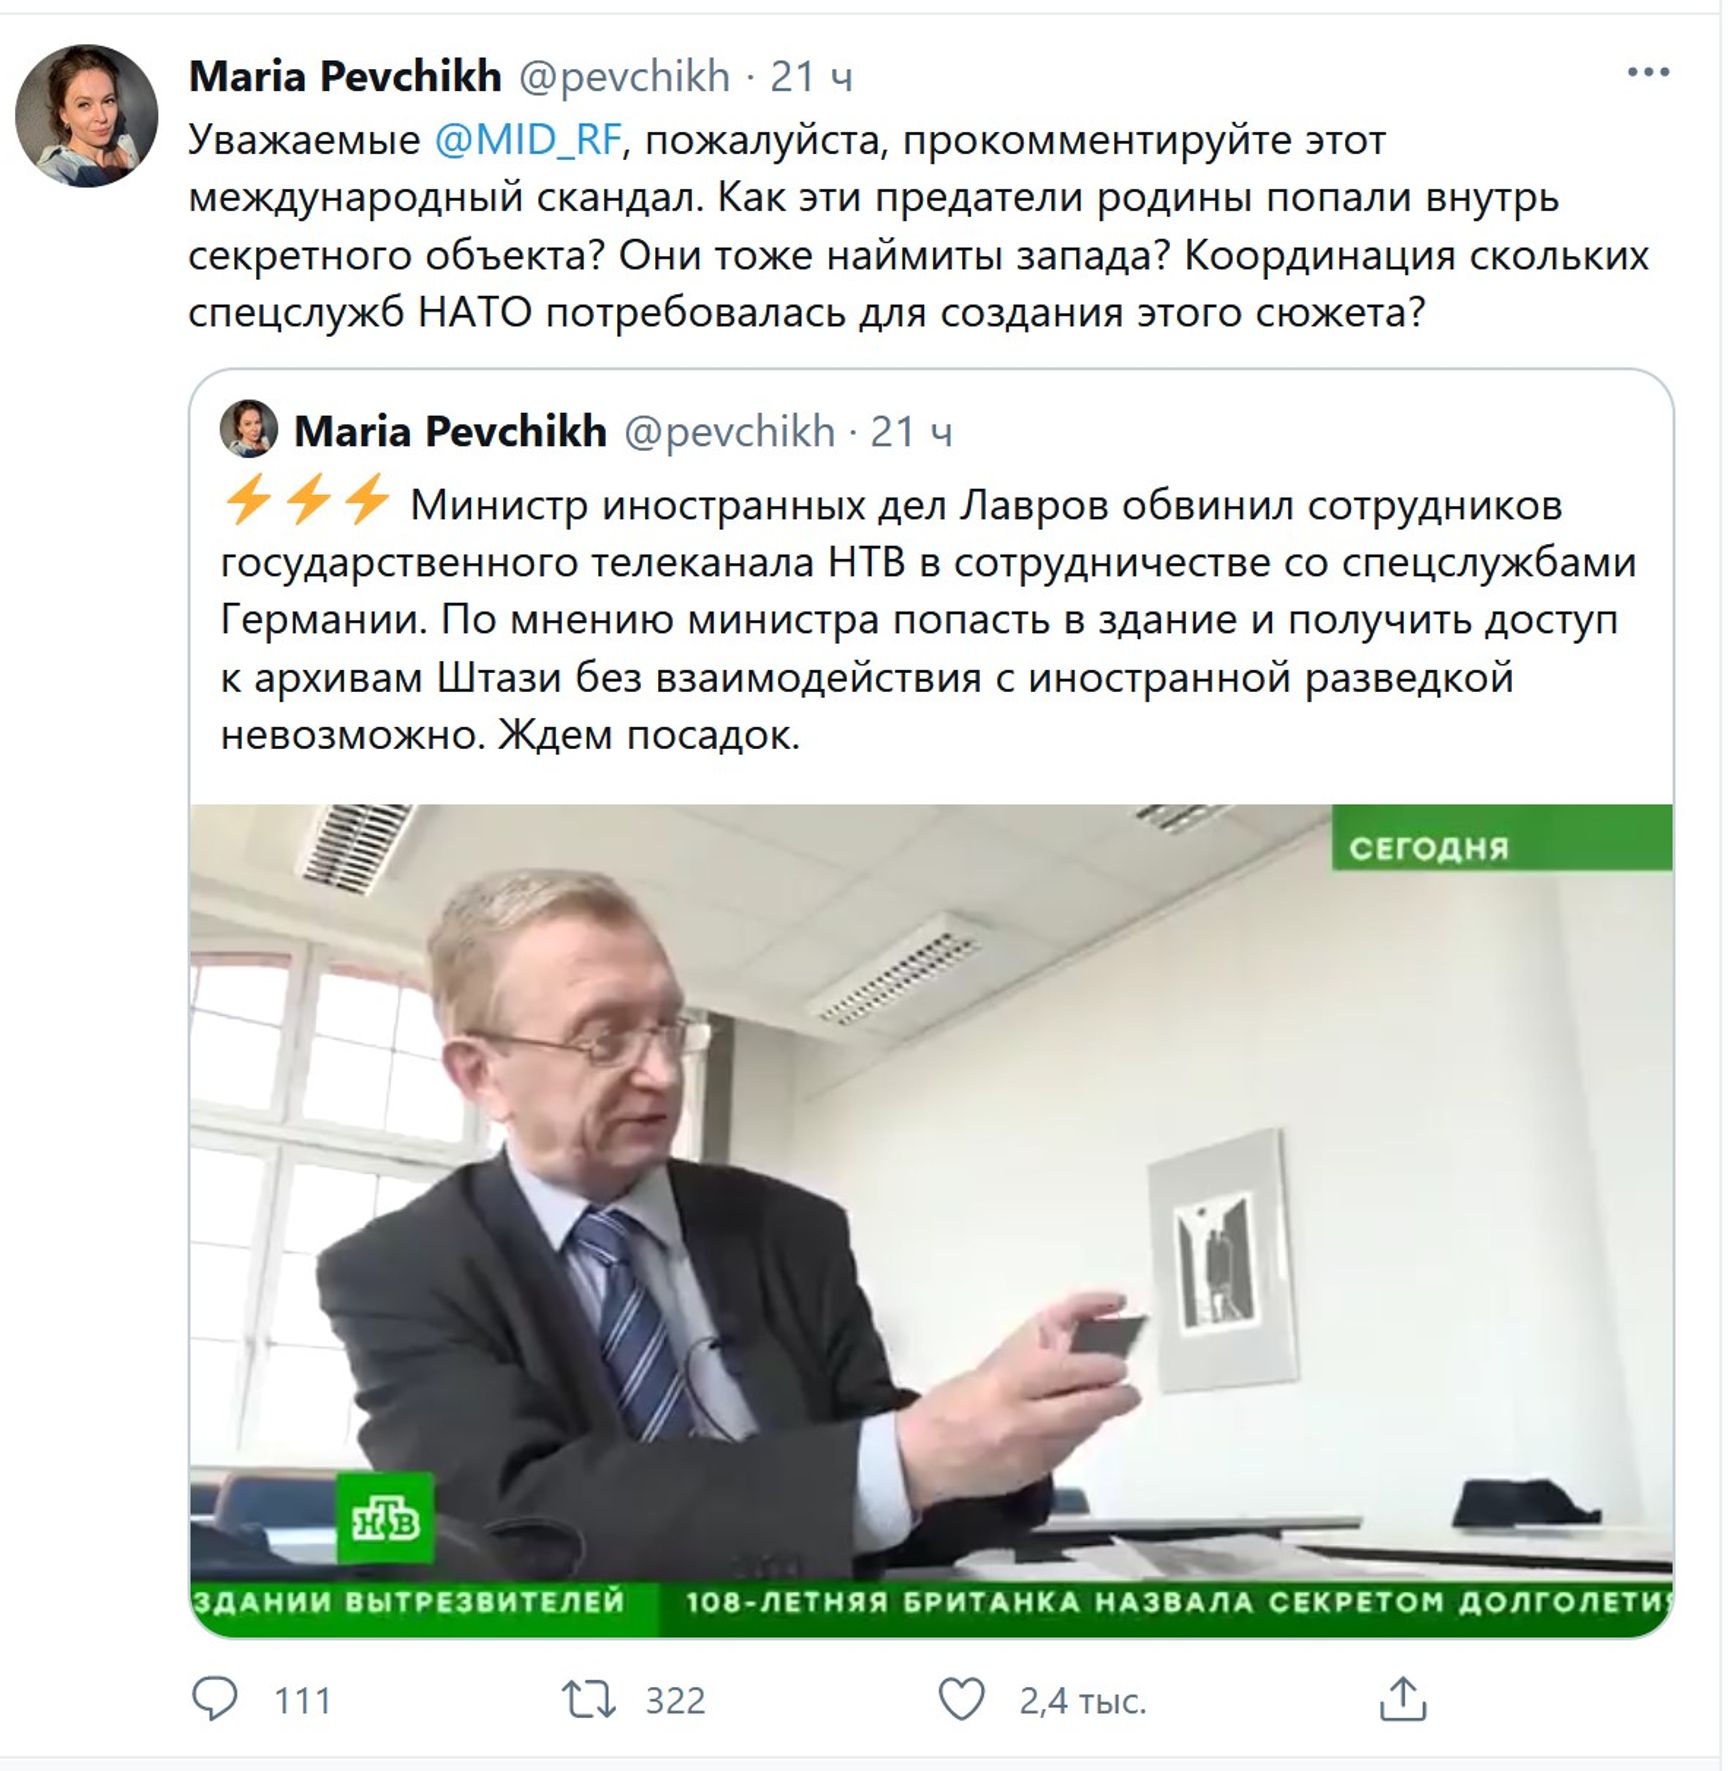 Лавров заявив, що Навальному при створенні фільму про палац допомагали спецслужби, - на тій підставі, що він відвідав відкритий архів